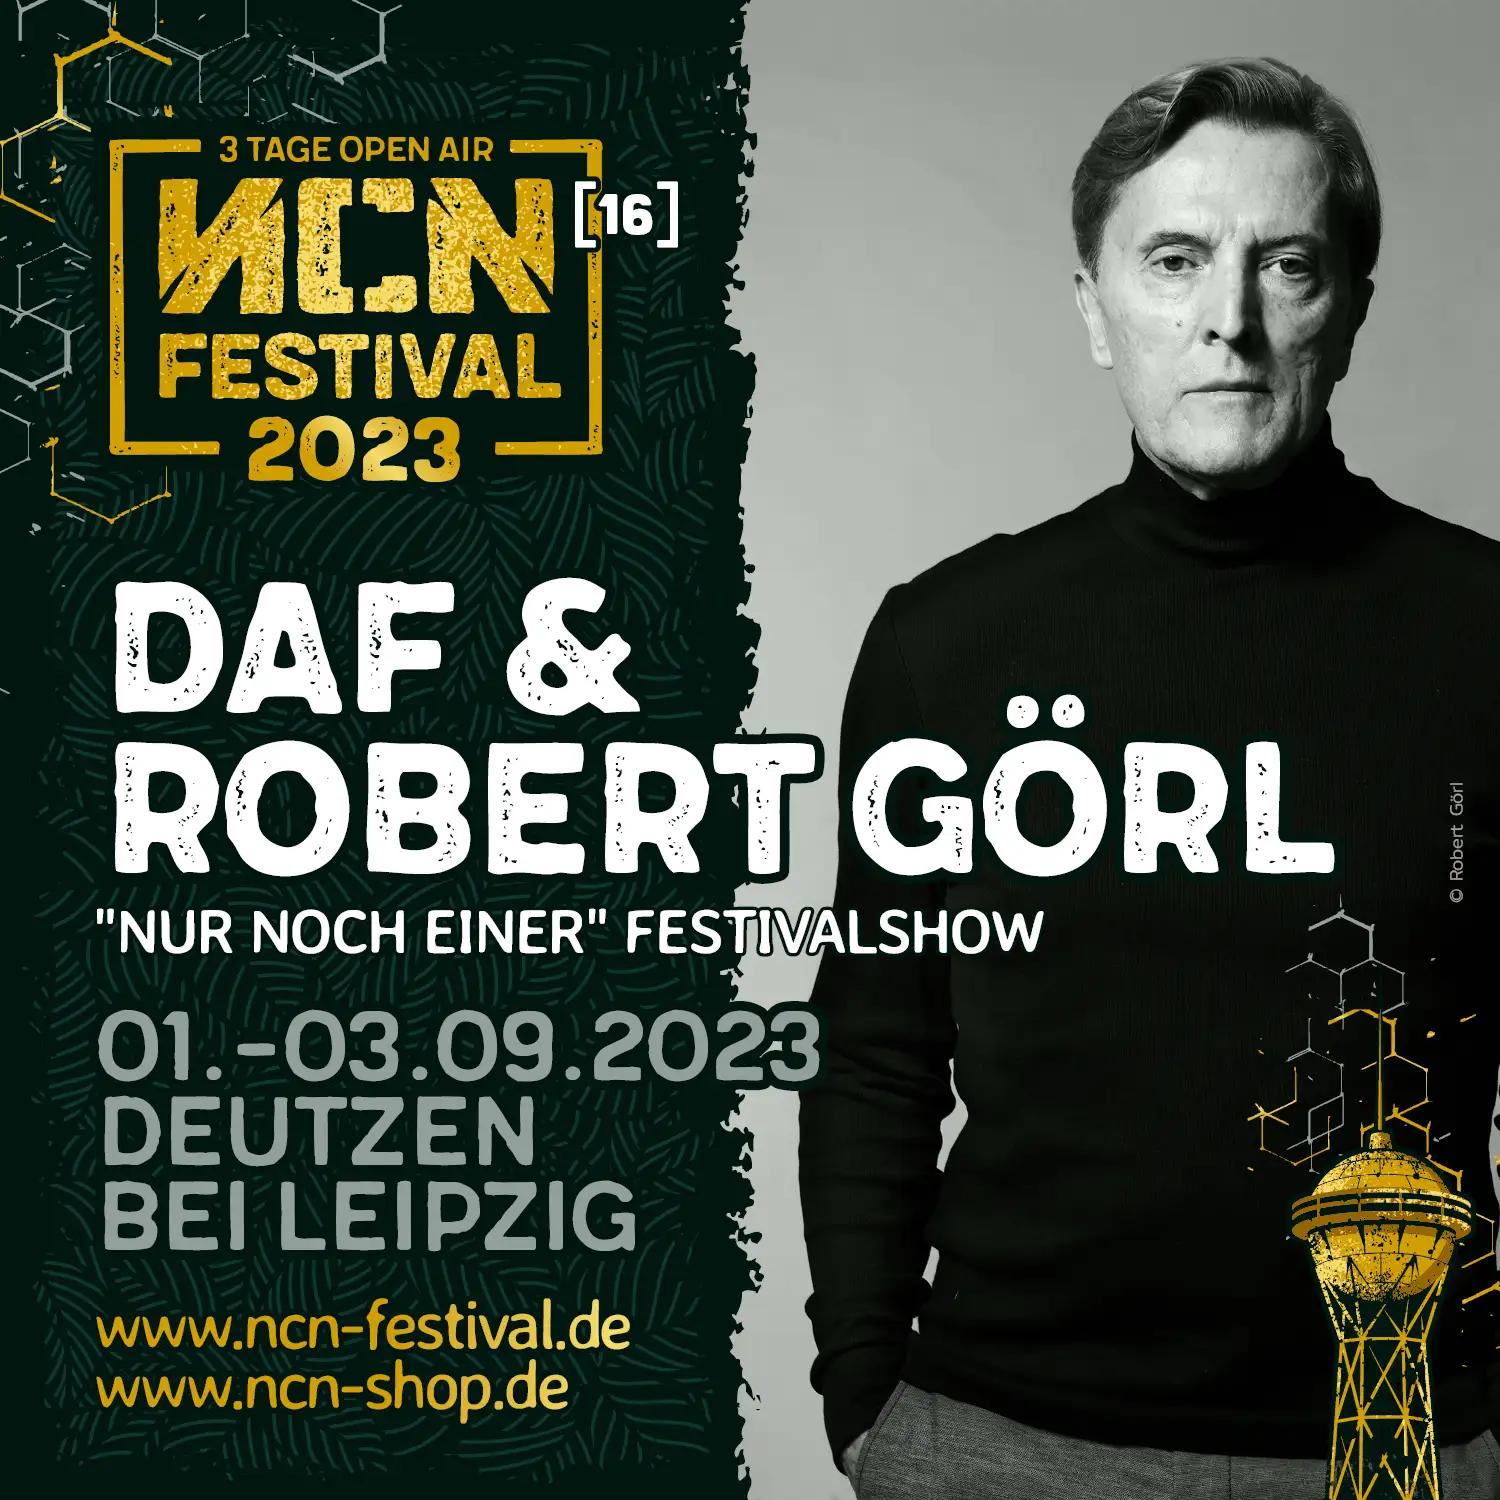 DAF & Robert Görl